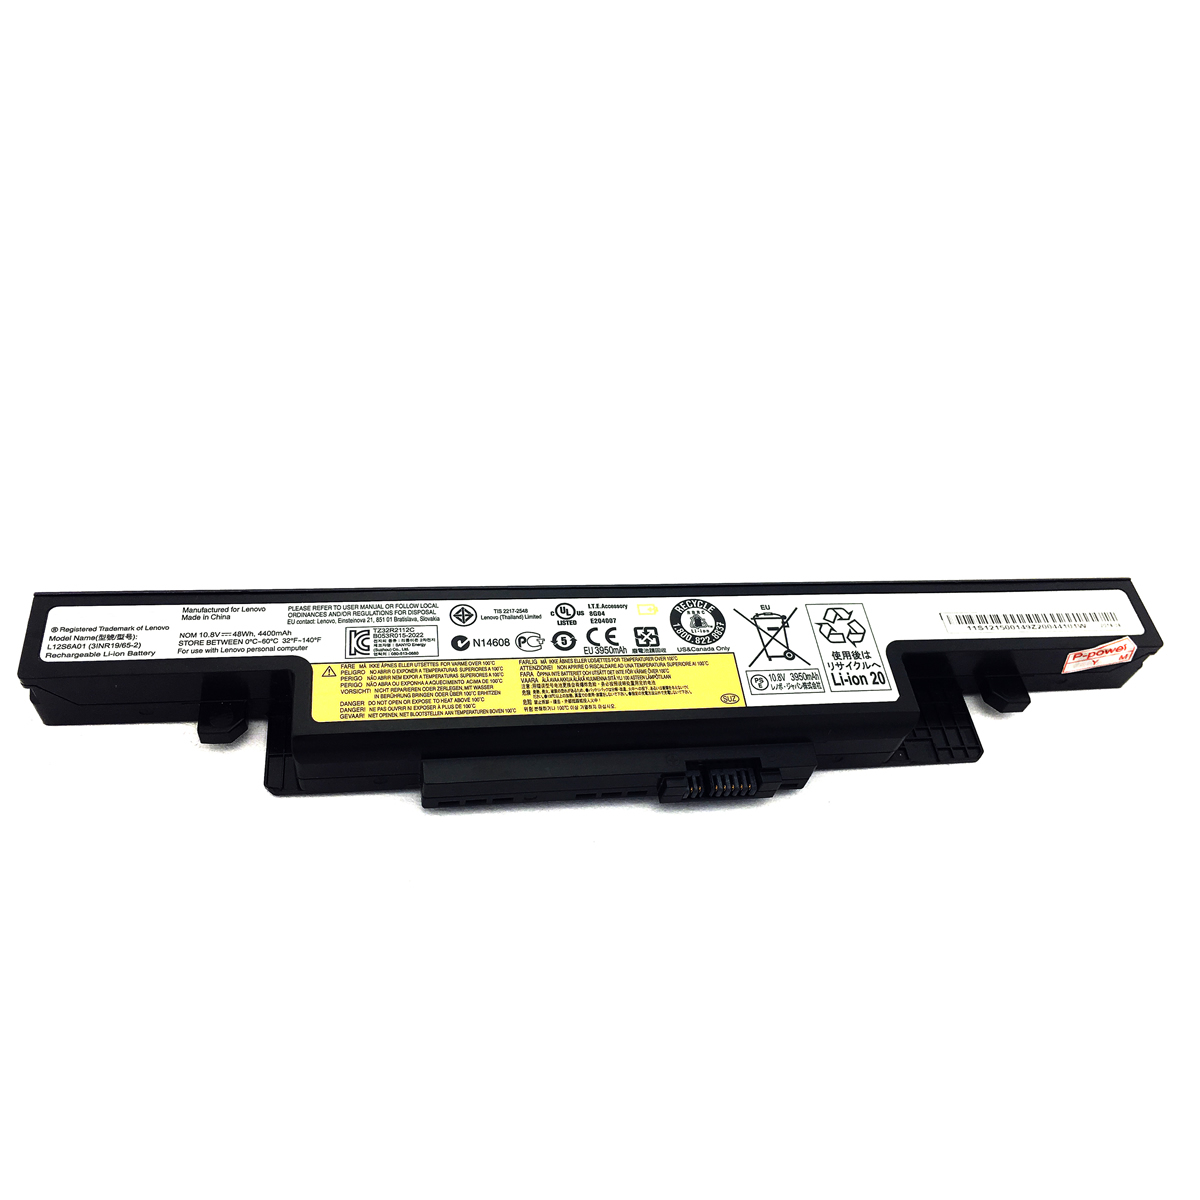 LENOVO IdeaPad Y510, IdeaPad Y510N, IdeaPad Y510P Series Batteries